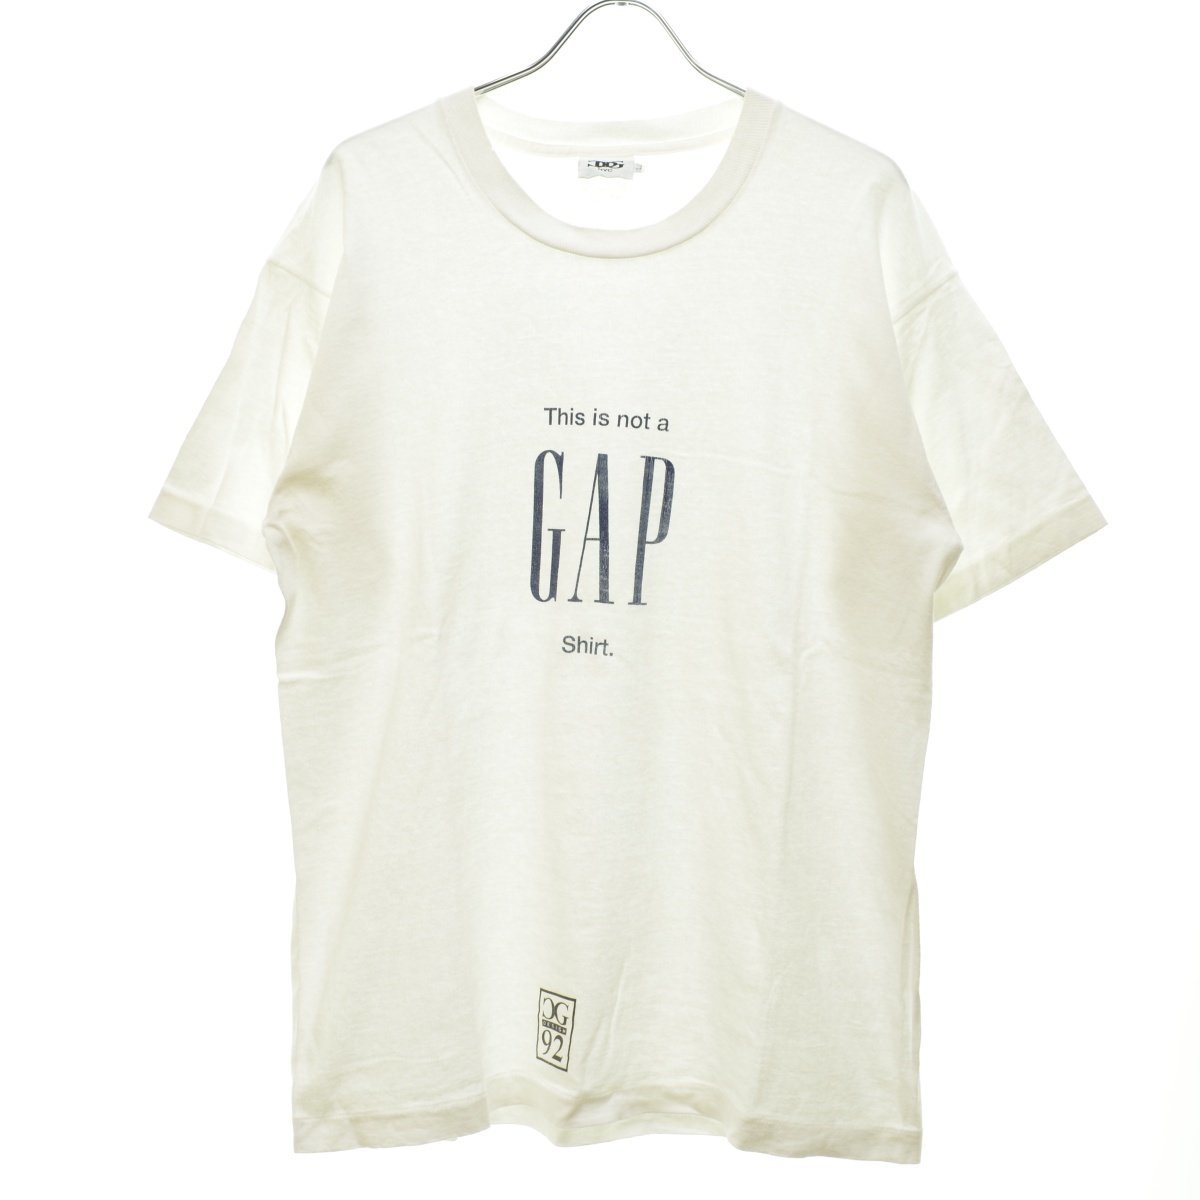 【Lサイズ】CG DESIGN / シージー デザイン 90s 92年 This is not a GAP shirt 半袖Tシャツ vintage ビンテージ ヴィンテージ アートt